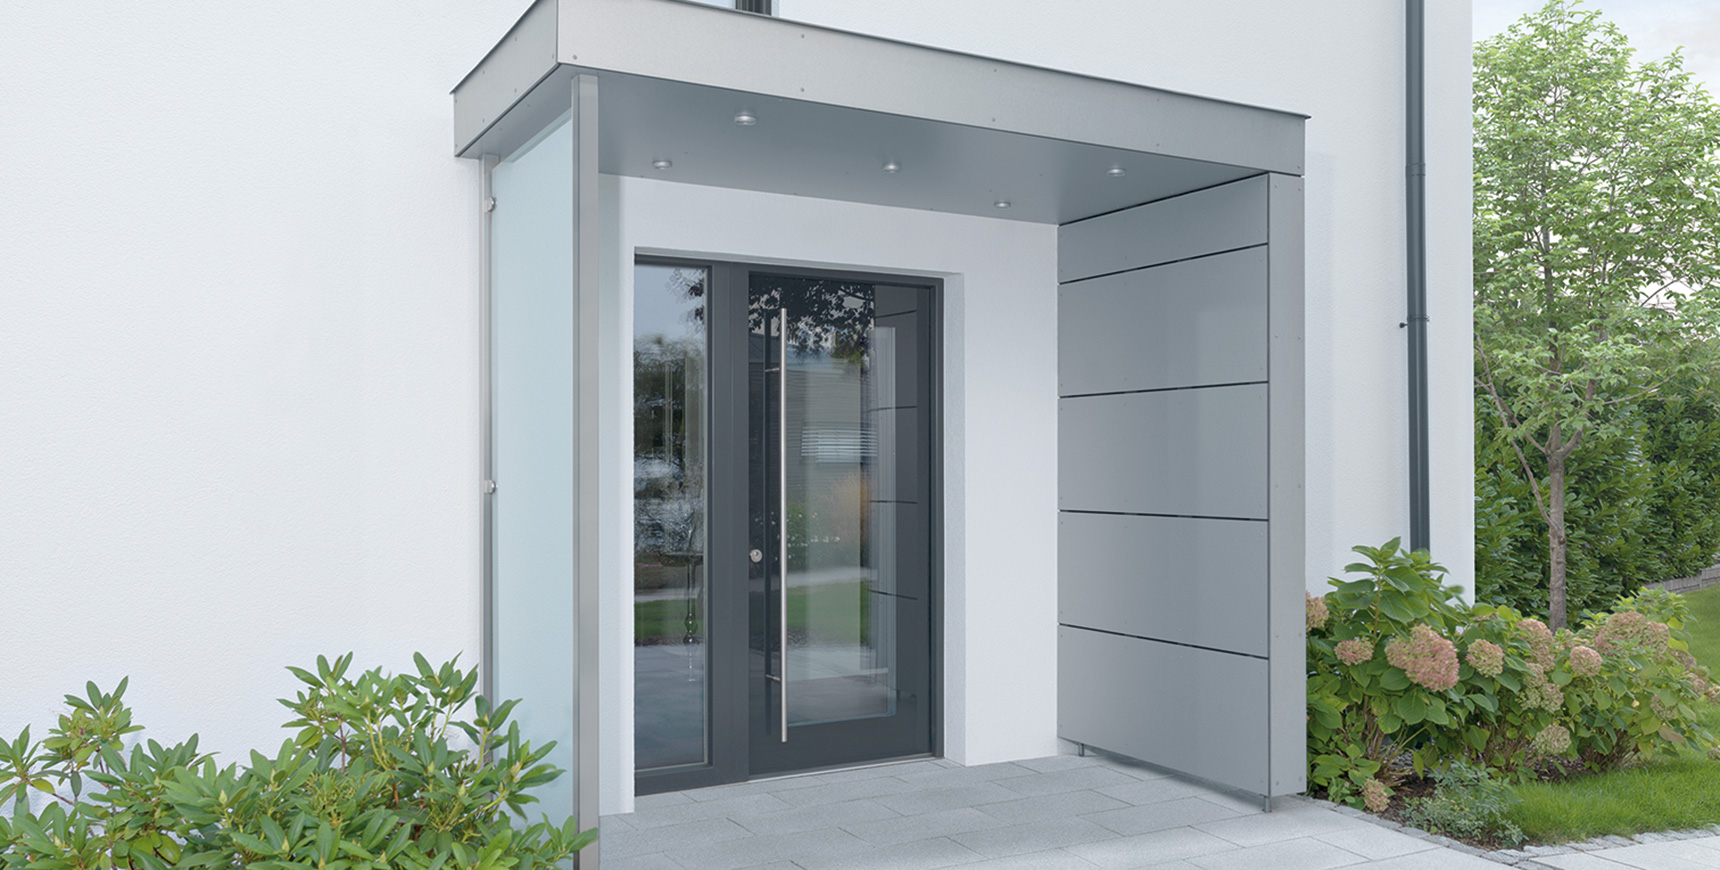 Überdachte Haustür aus Aluminium mit Glasscheibe, Schlüsselbetätigte Mehrfach-Verriegelungen von FUHR mit präzisen zweitourigen Getriebe. Für ein leichtgängiges Öffnen und Schließen von Haustüren. 